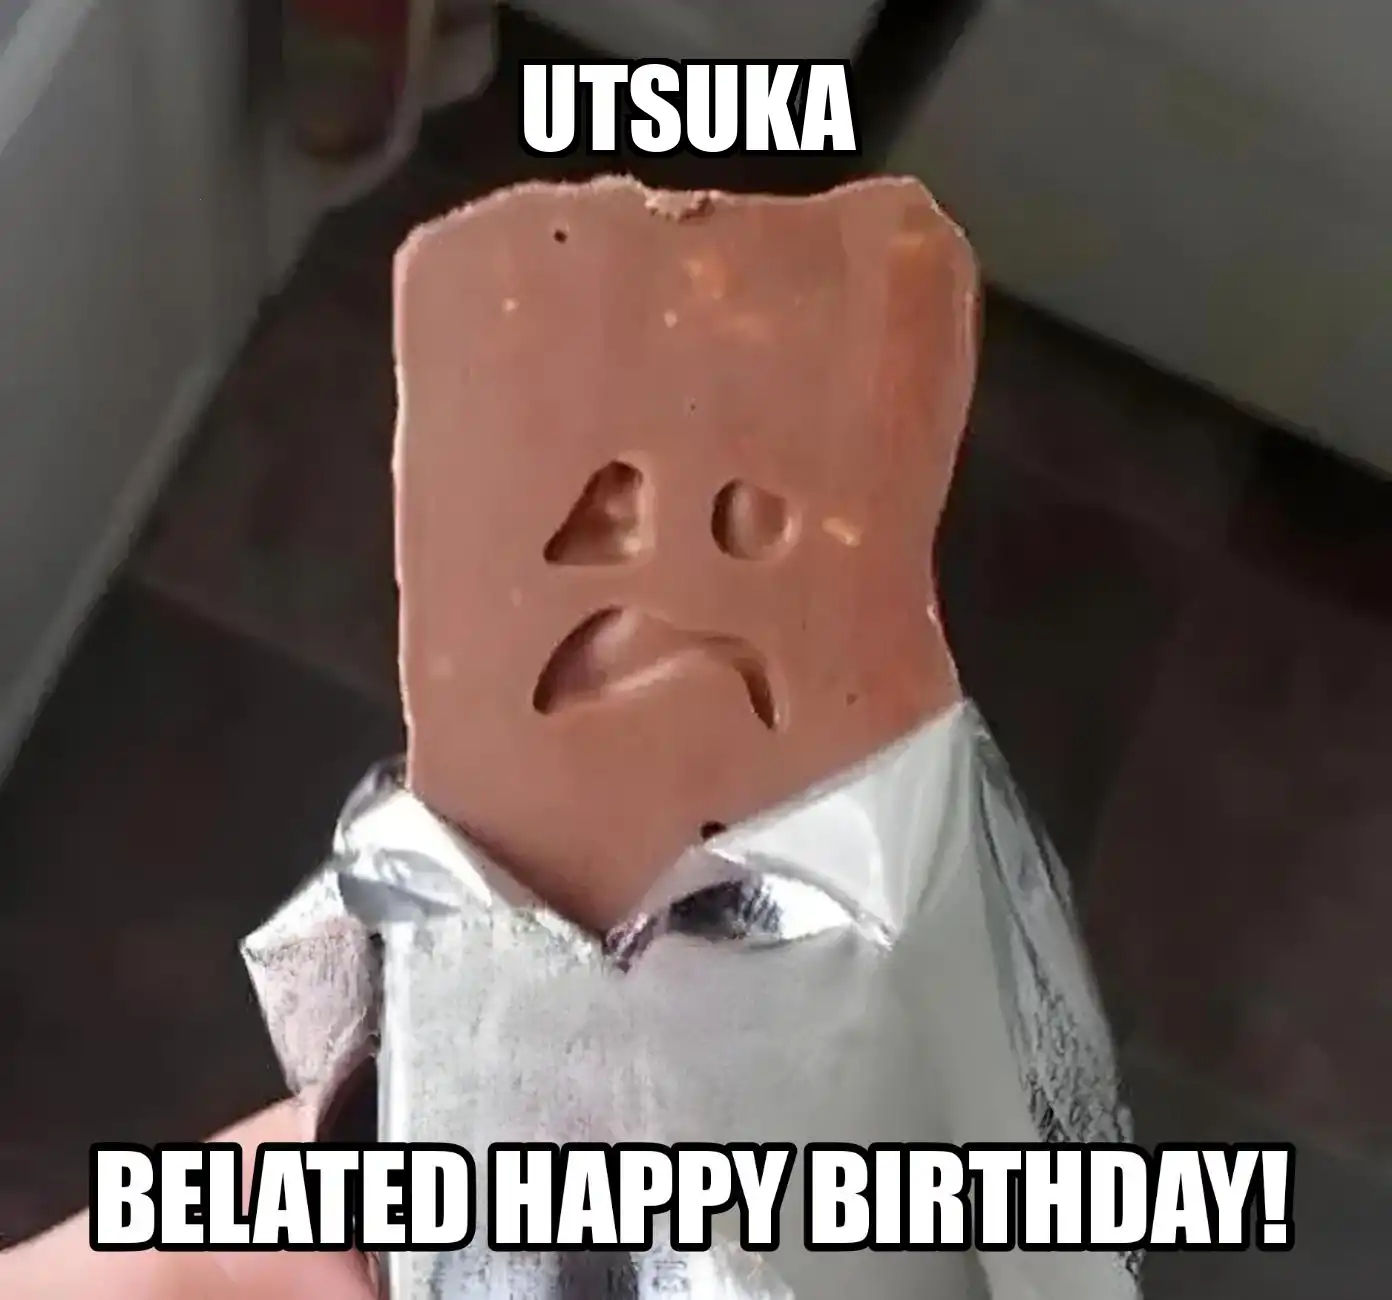 Happy Birthday Utsuka Belated Happy Birthday Meme